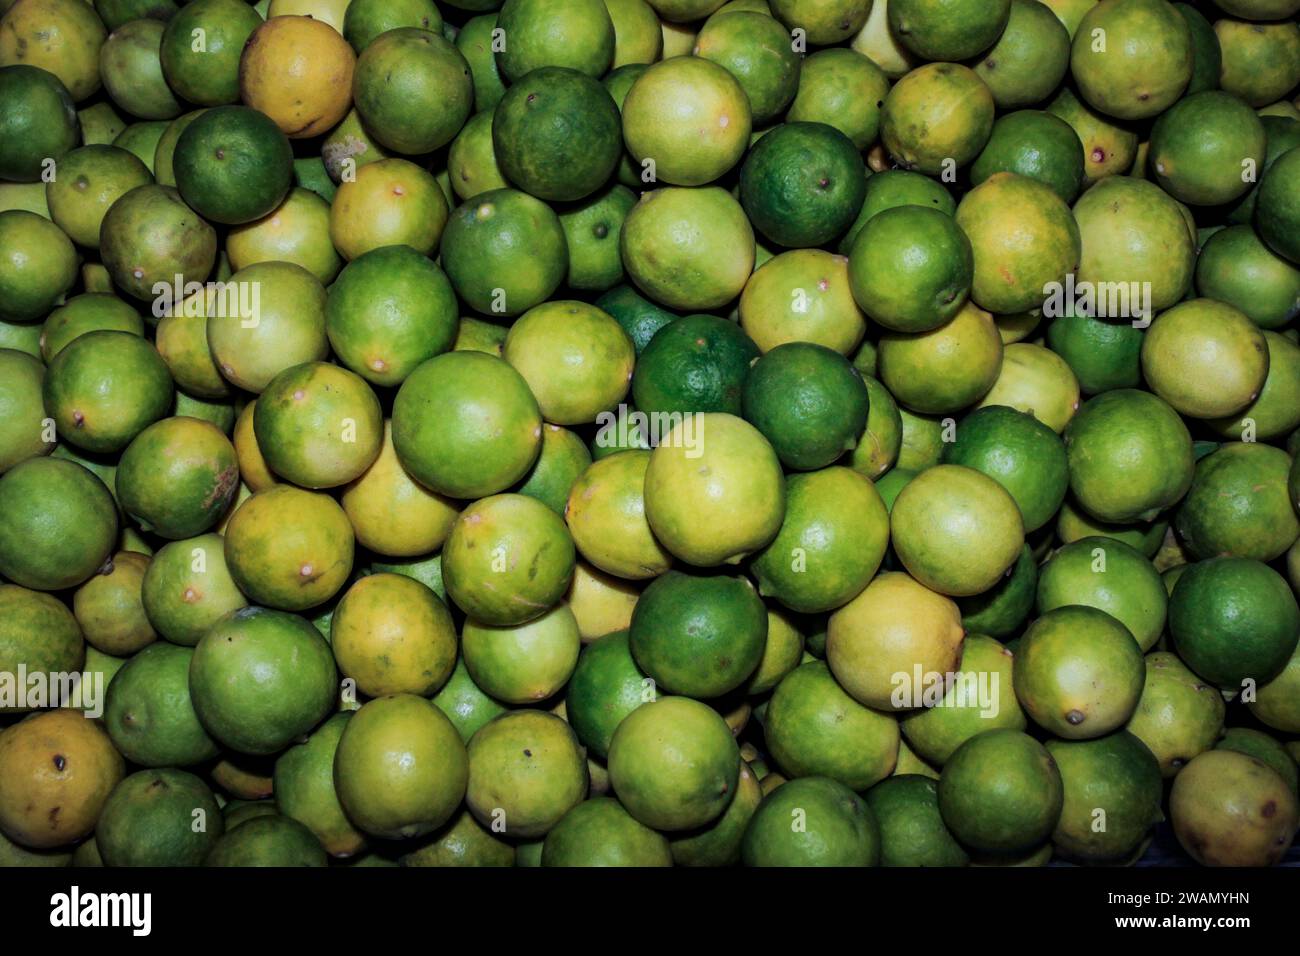 Viele Zitronen, Citrus limon, die Zitrusfrucht des Zitronenbaums, ist ein Oxidationsmittel reich an Vitamin C und löslichen Ballaststoffen Stockfoto